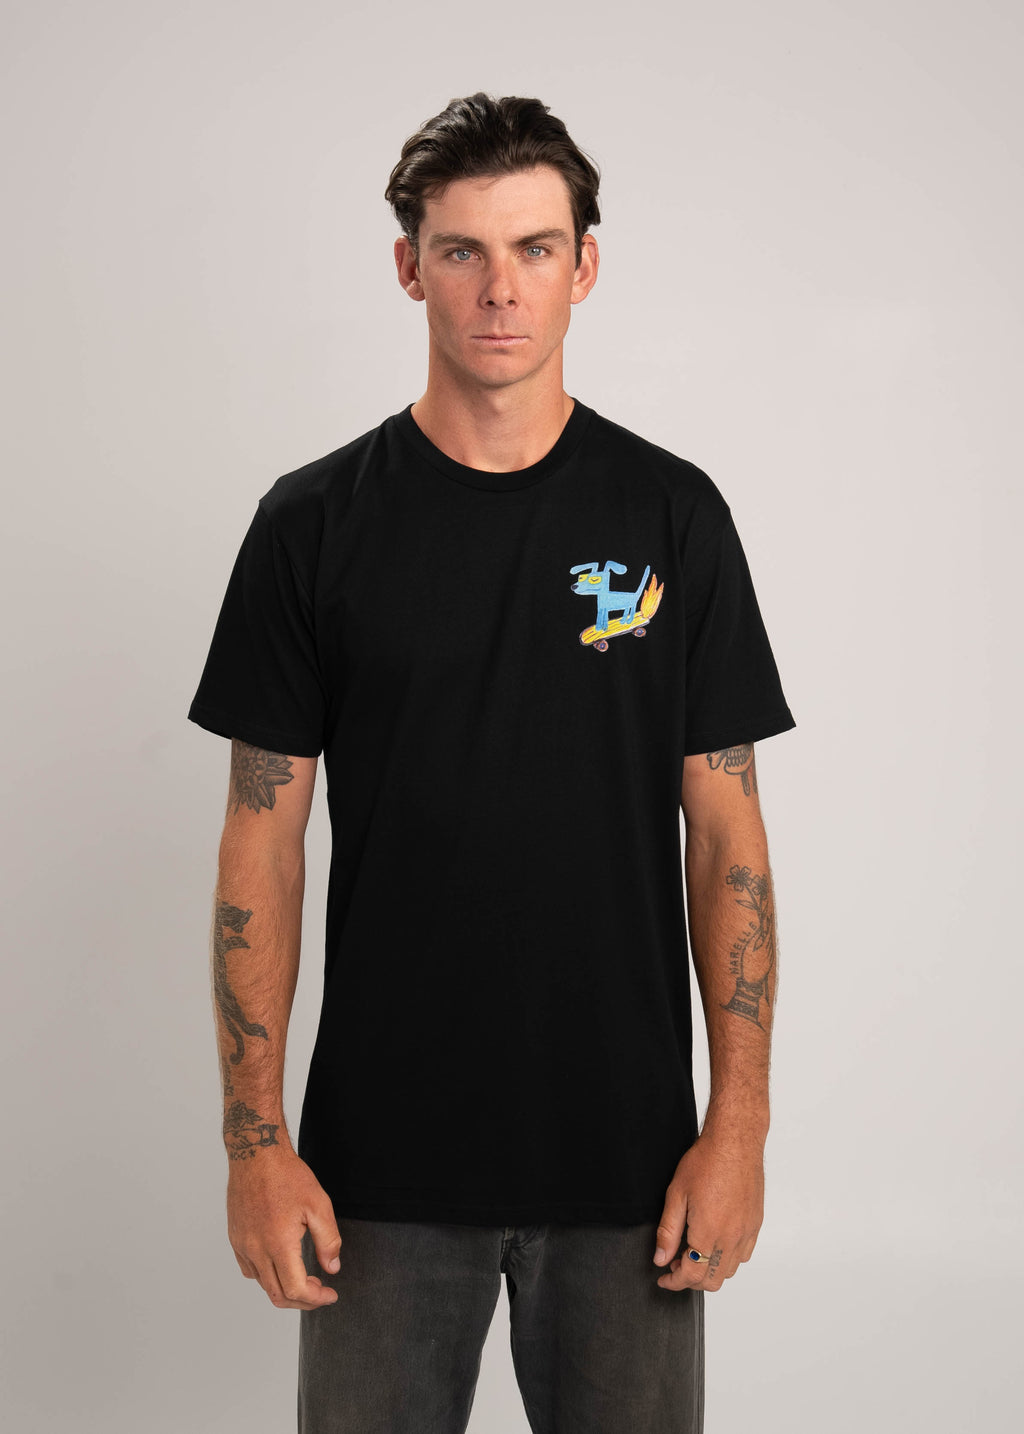 Dr.Moose Byron Bay Skate Dog T-Shirt